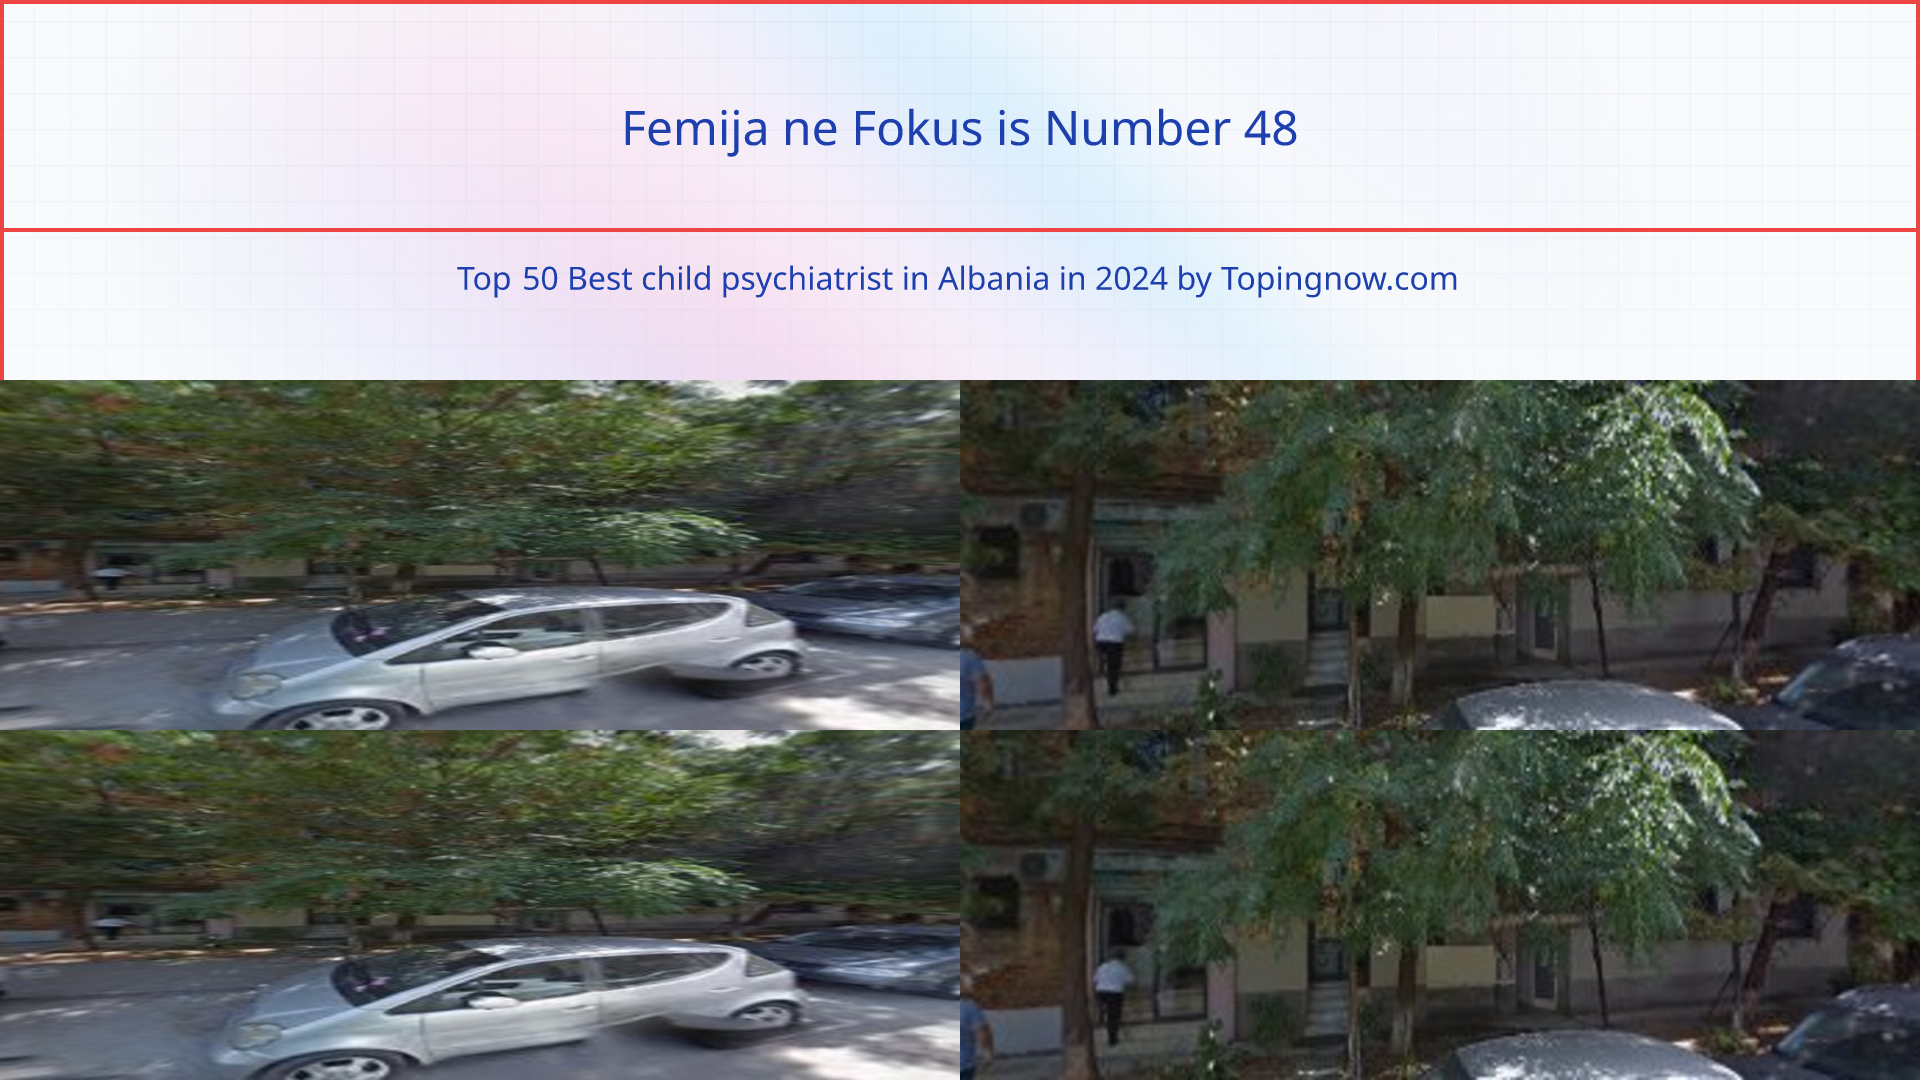 Femija ne Fokus: Top 50 Best child psychiatrist in Albania in 2024